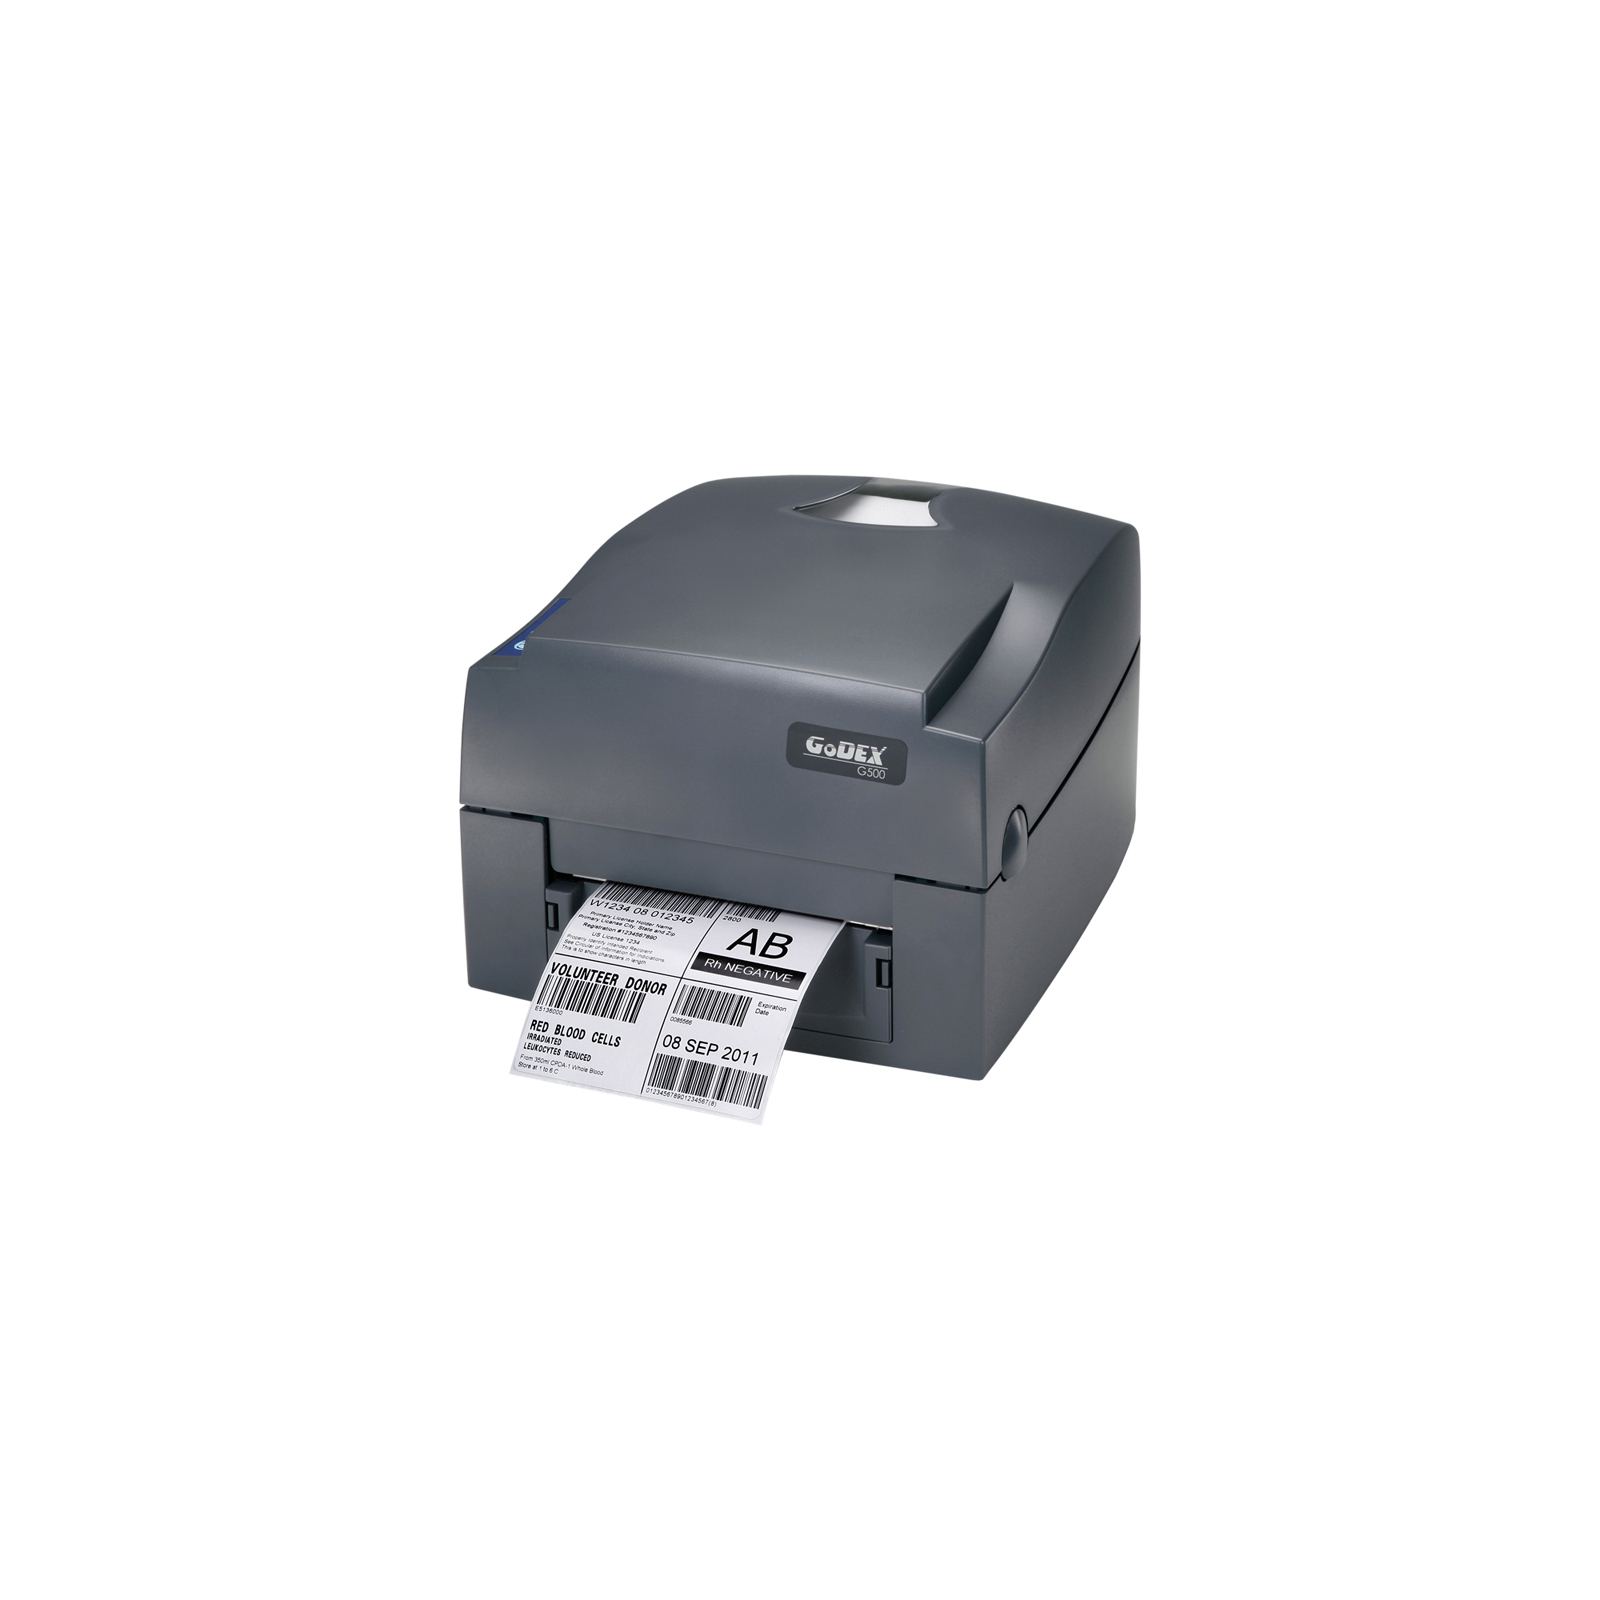 Принтер етикеток Godex G530 UES (300dpi) (5843)